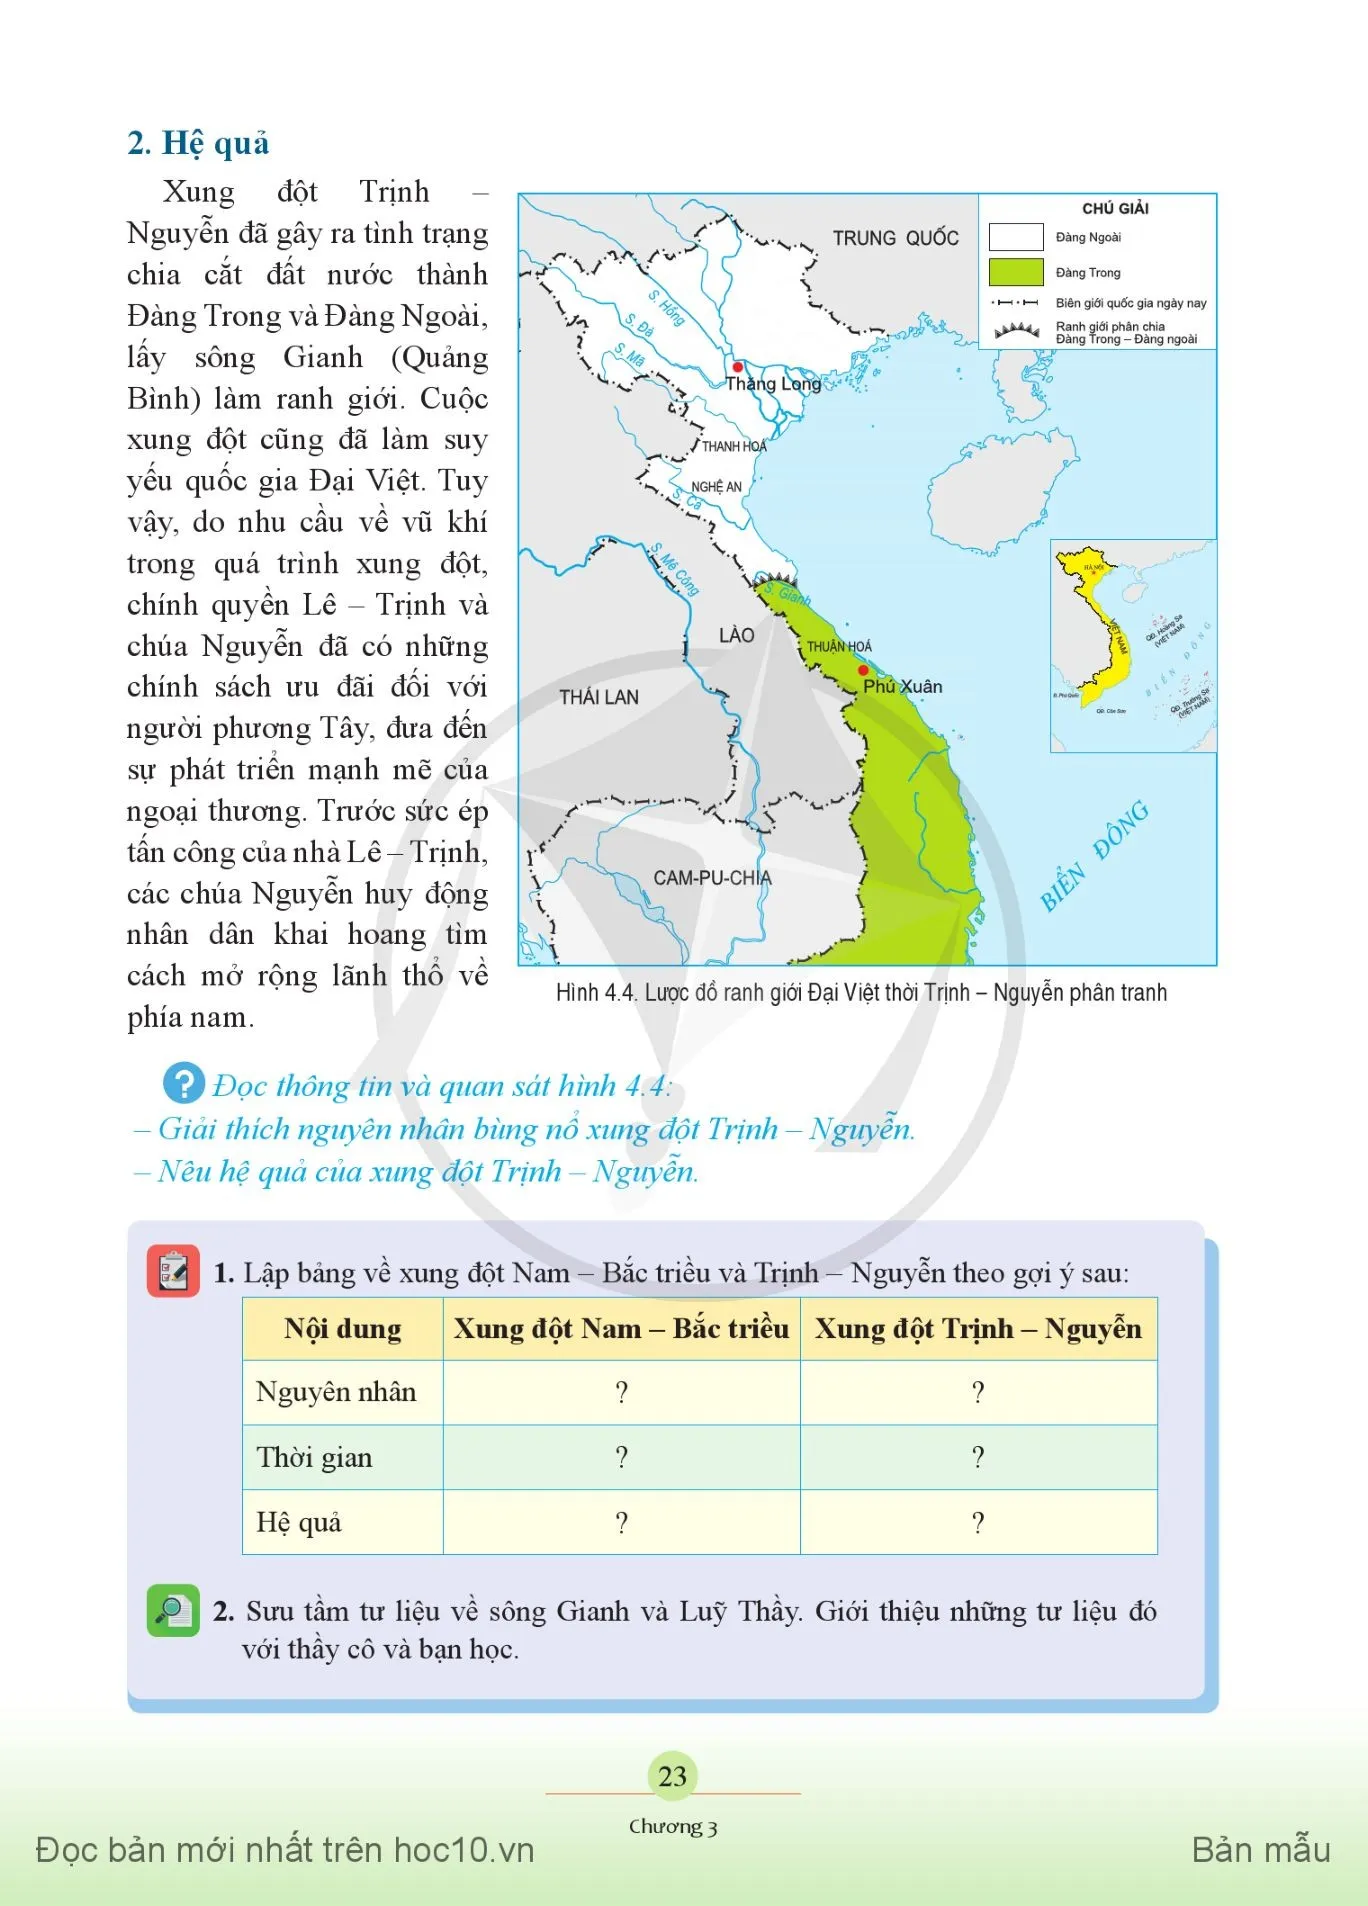 Bài 4. Xung đột Nam – Bắc triều, Trịnh – Nguyễn